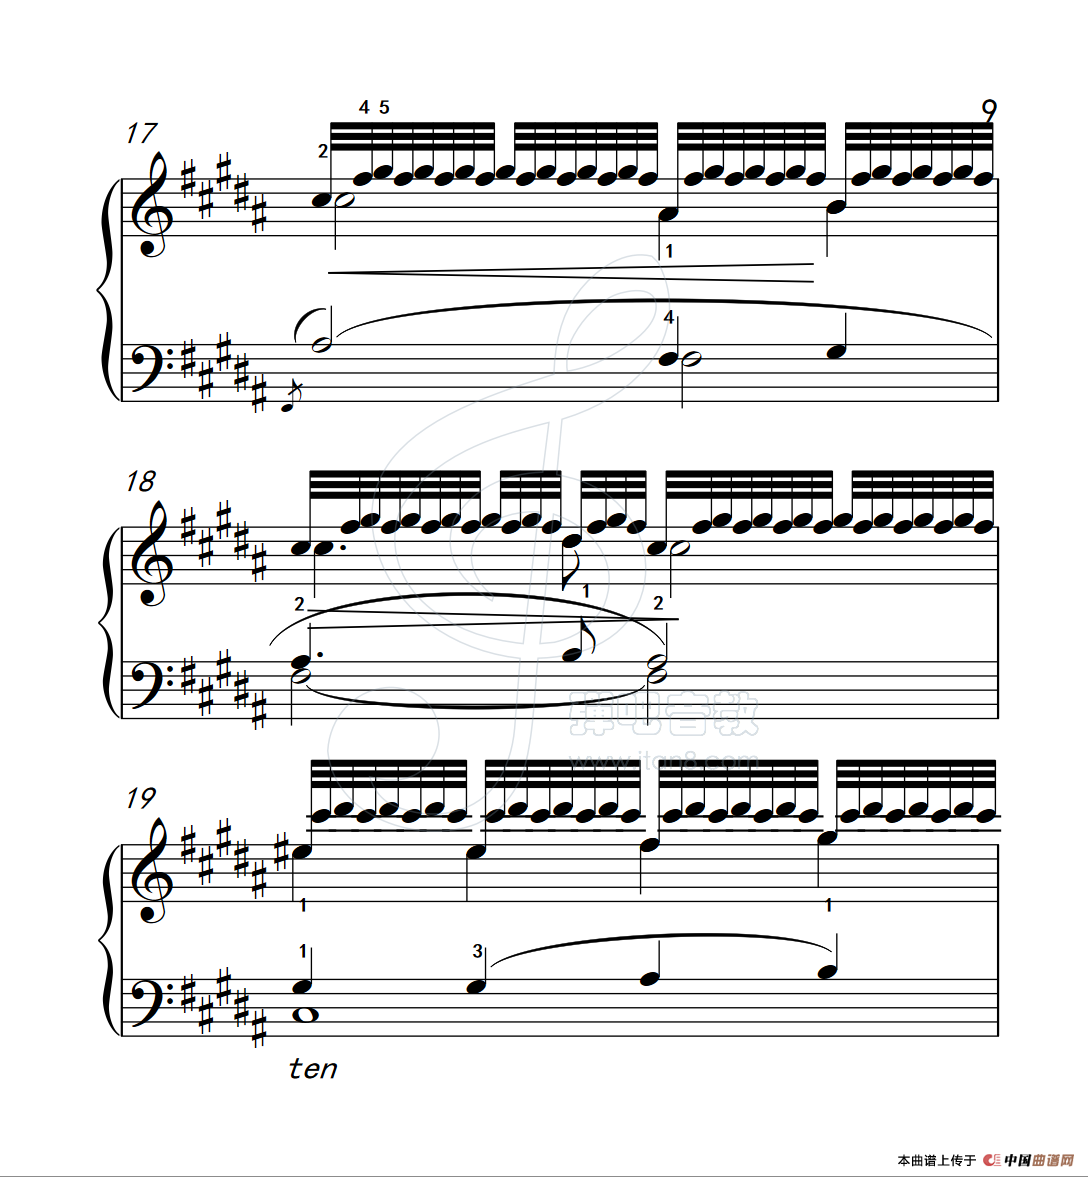 《练习曲 15》钢琴曲谱图分享